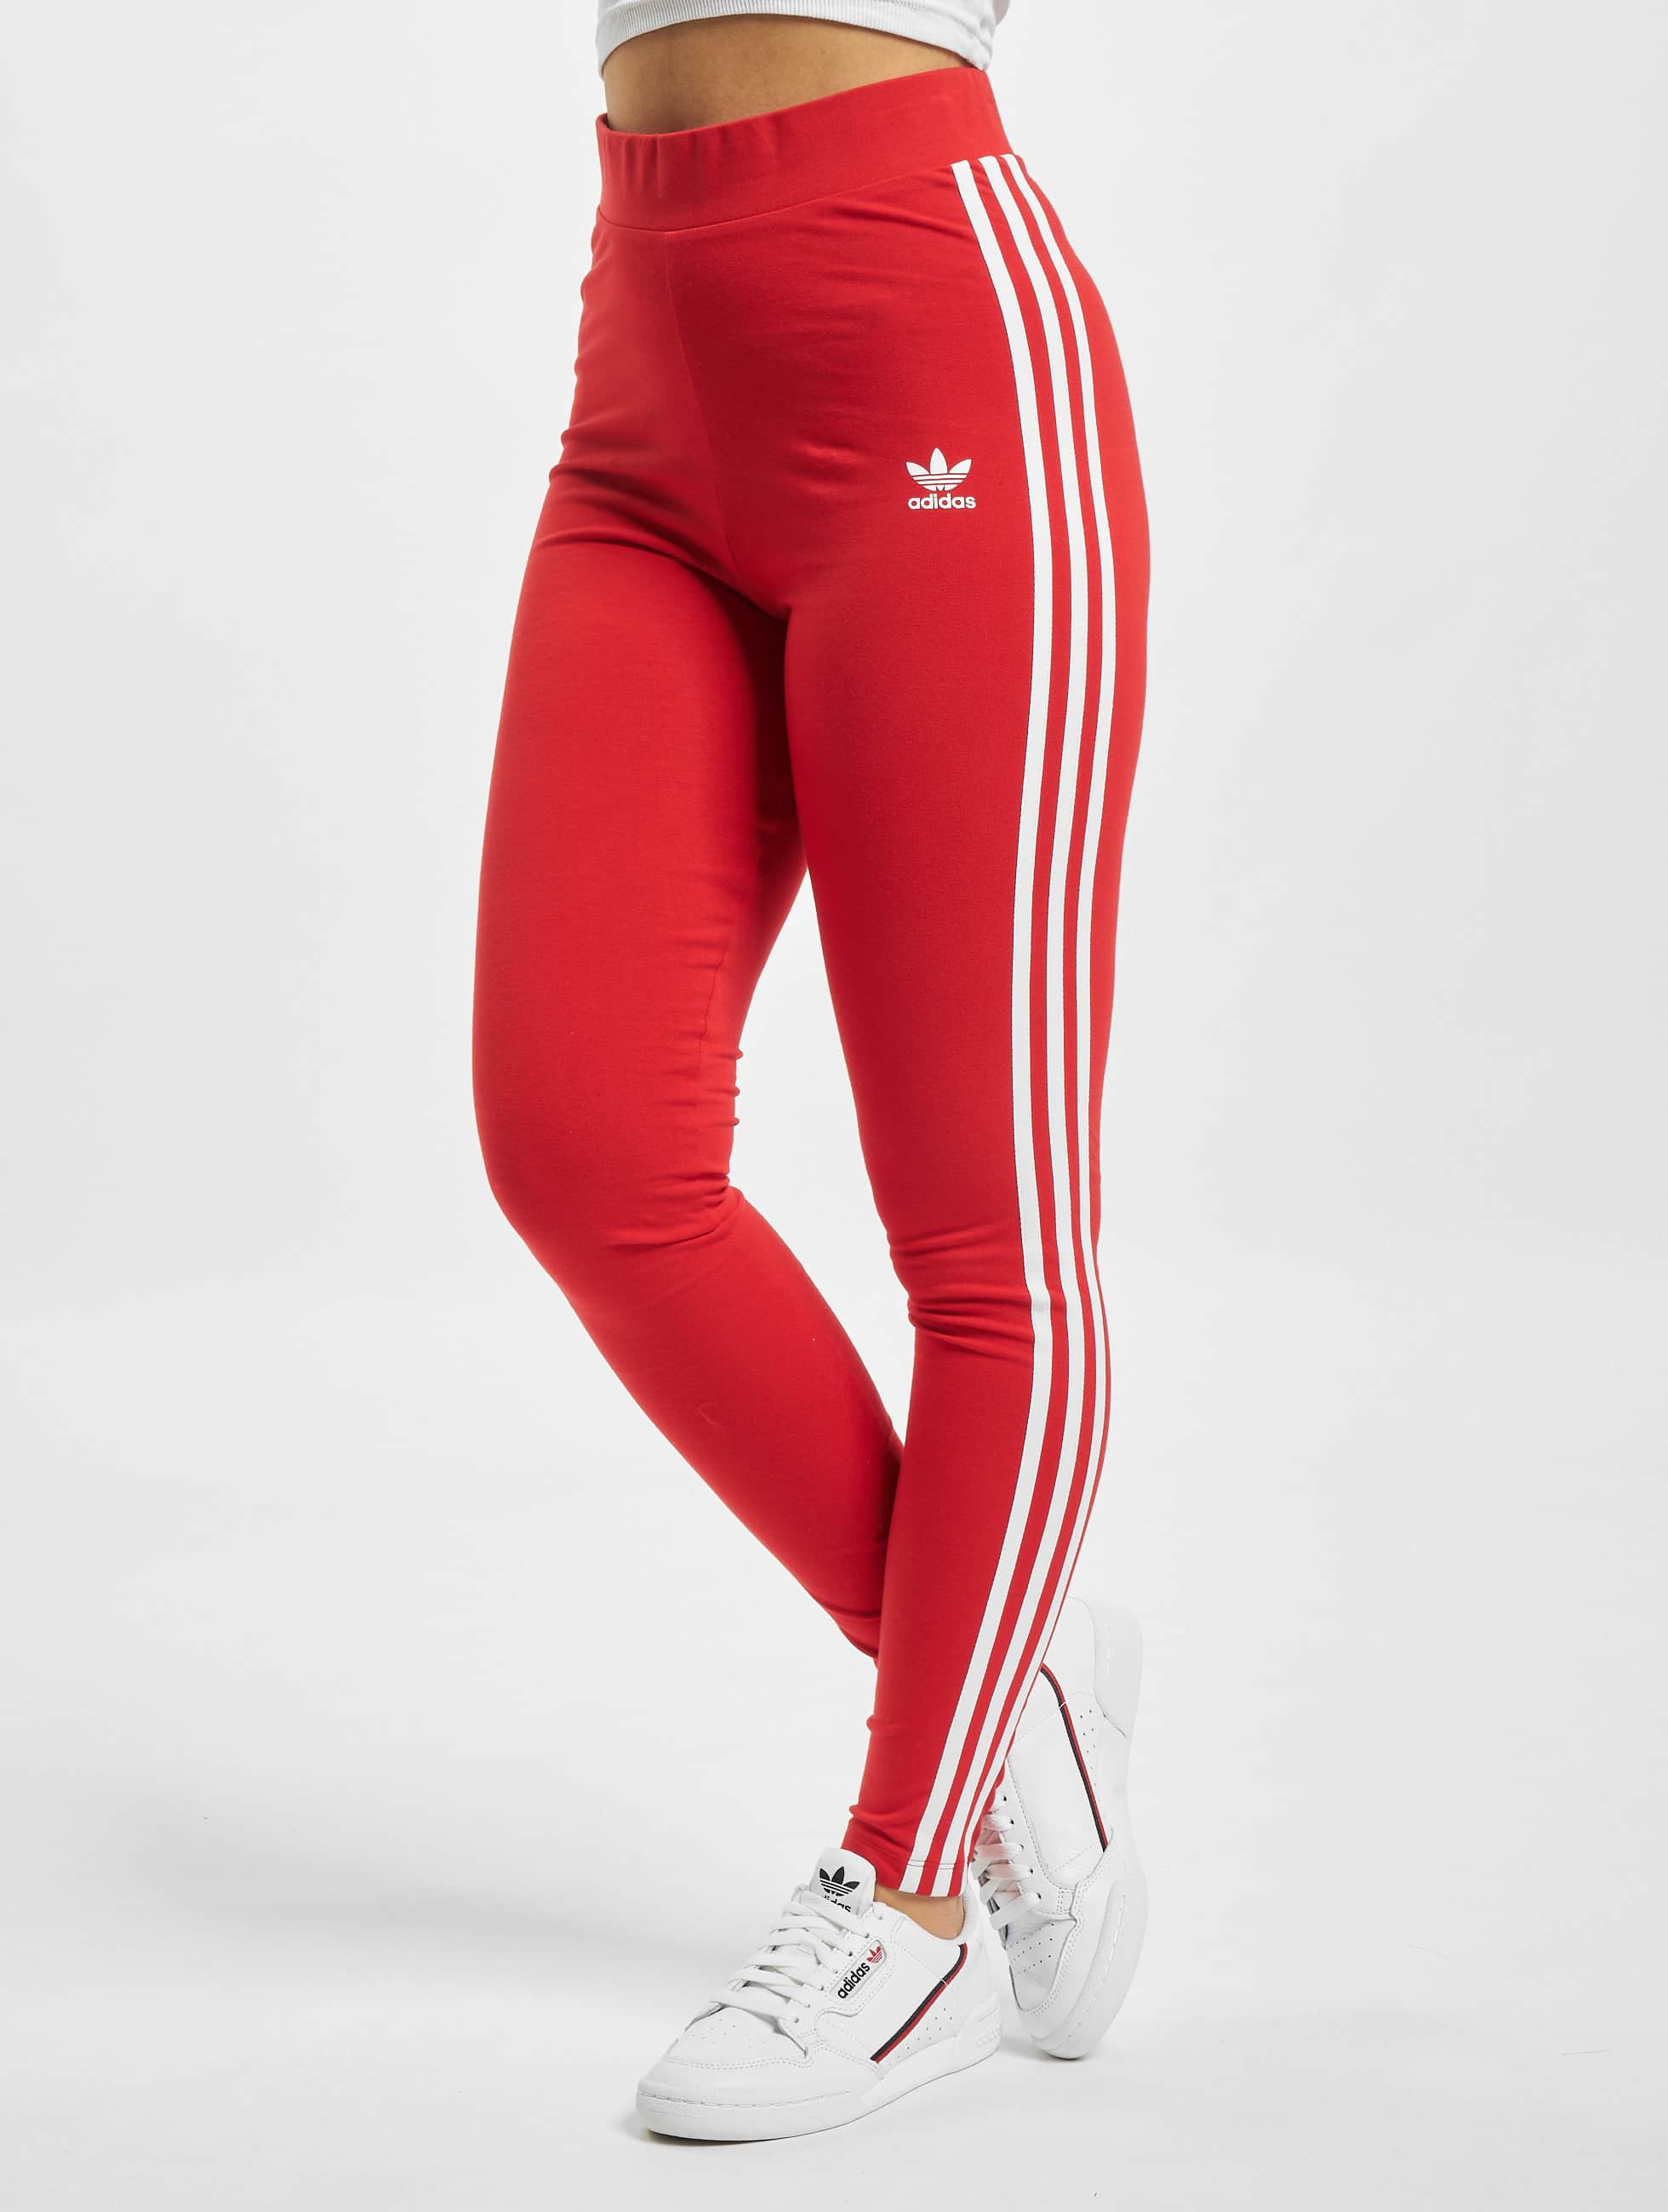 nood Zoeken Toegangsprijs adidas Originals broek / Legging 3 Stripes in rood 806241